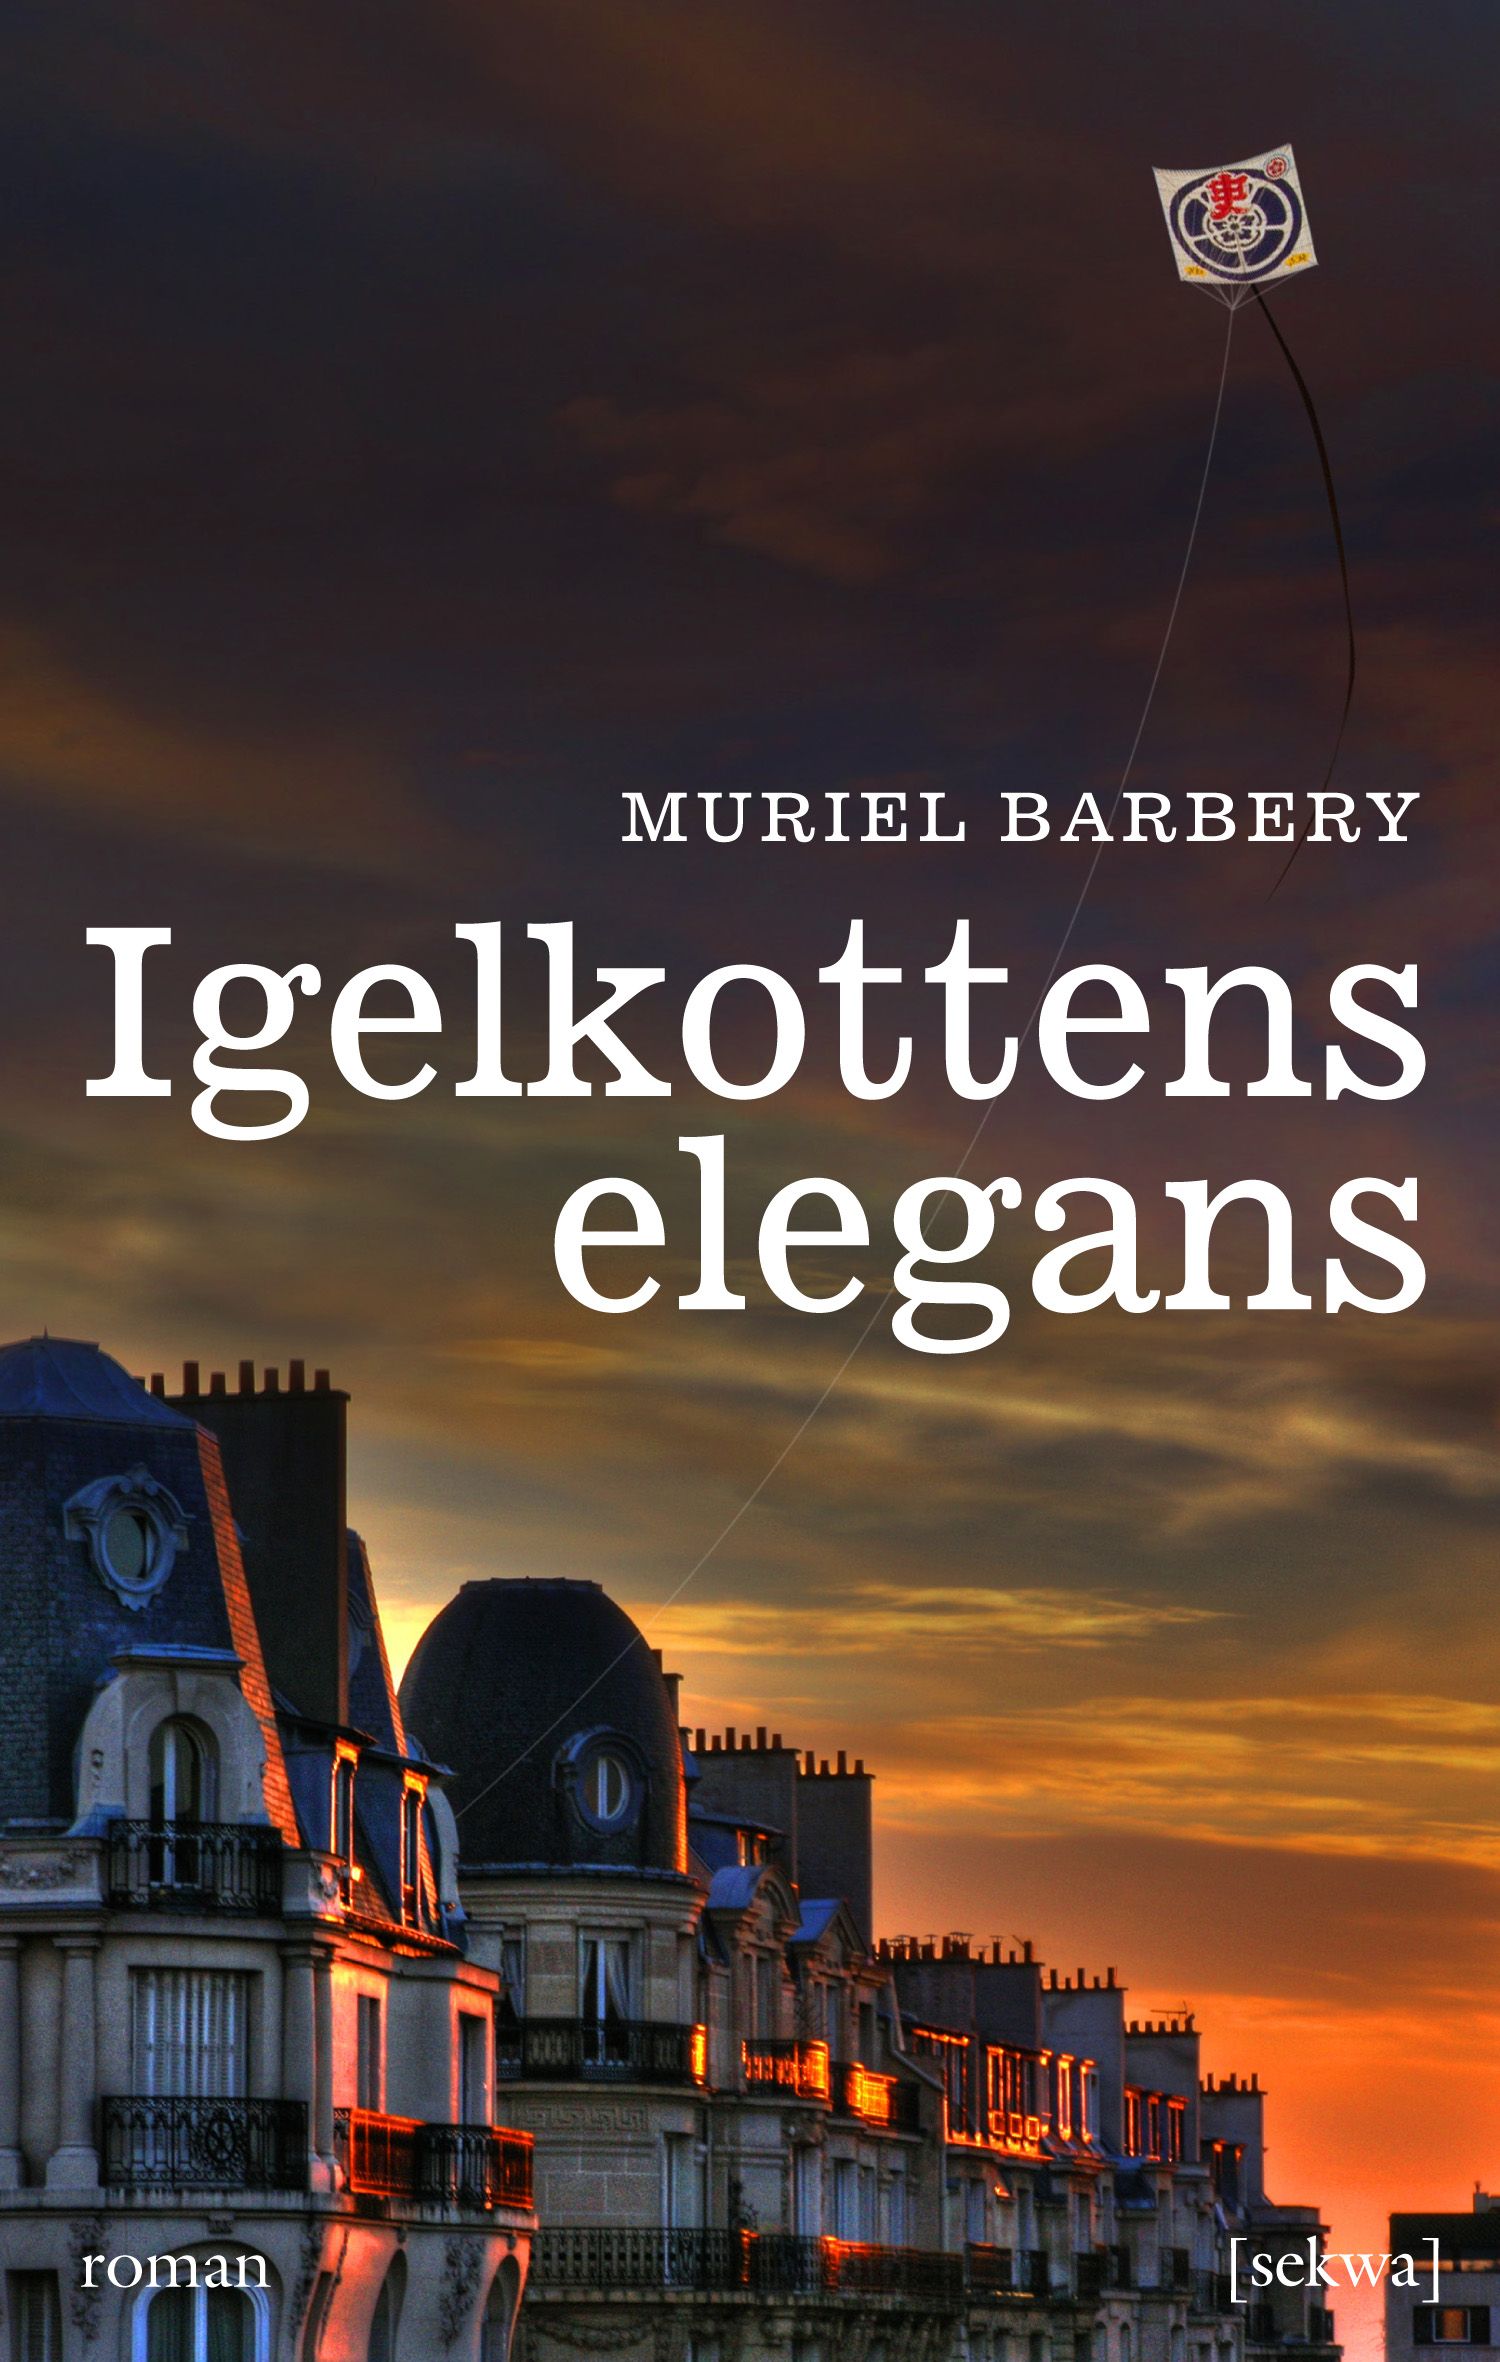 Igelkottens elegans, eBook by Muriel Barbery